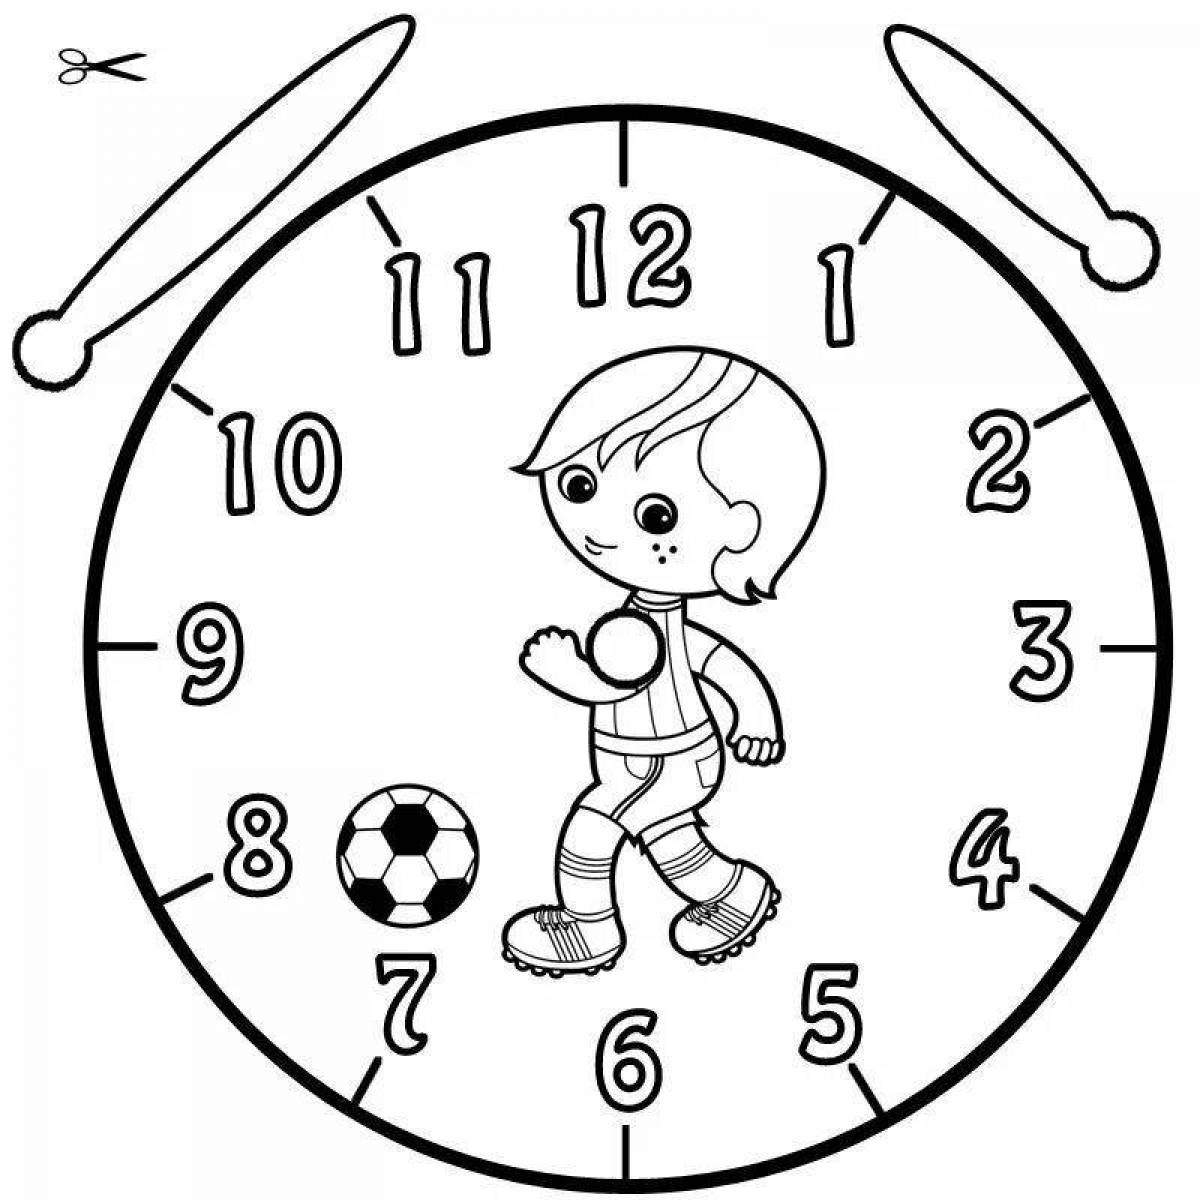 Раскраски часов для детей. Часы раскраска. Часы раскраска для детей. Трафарет часов для детей. Часы для распечатки для детей.